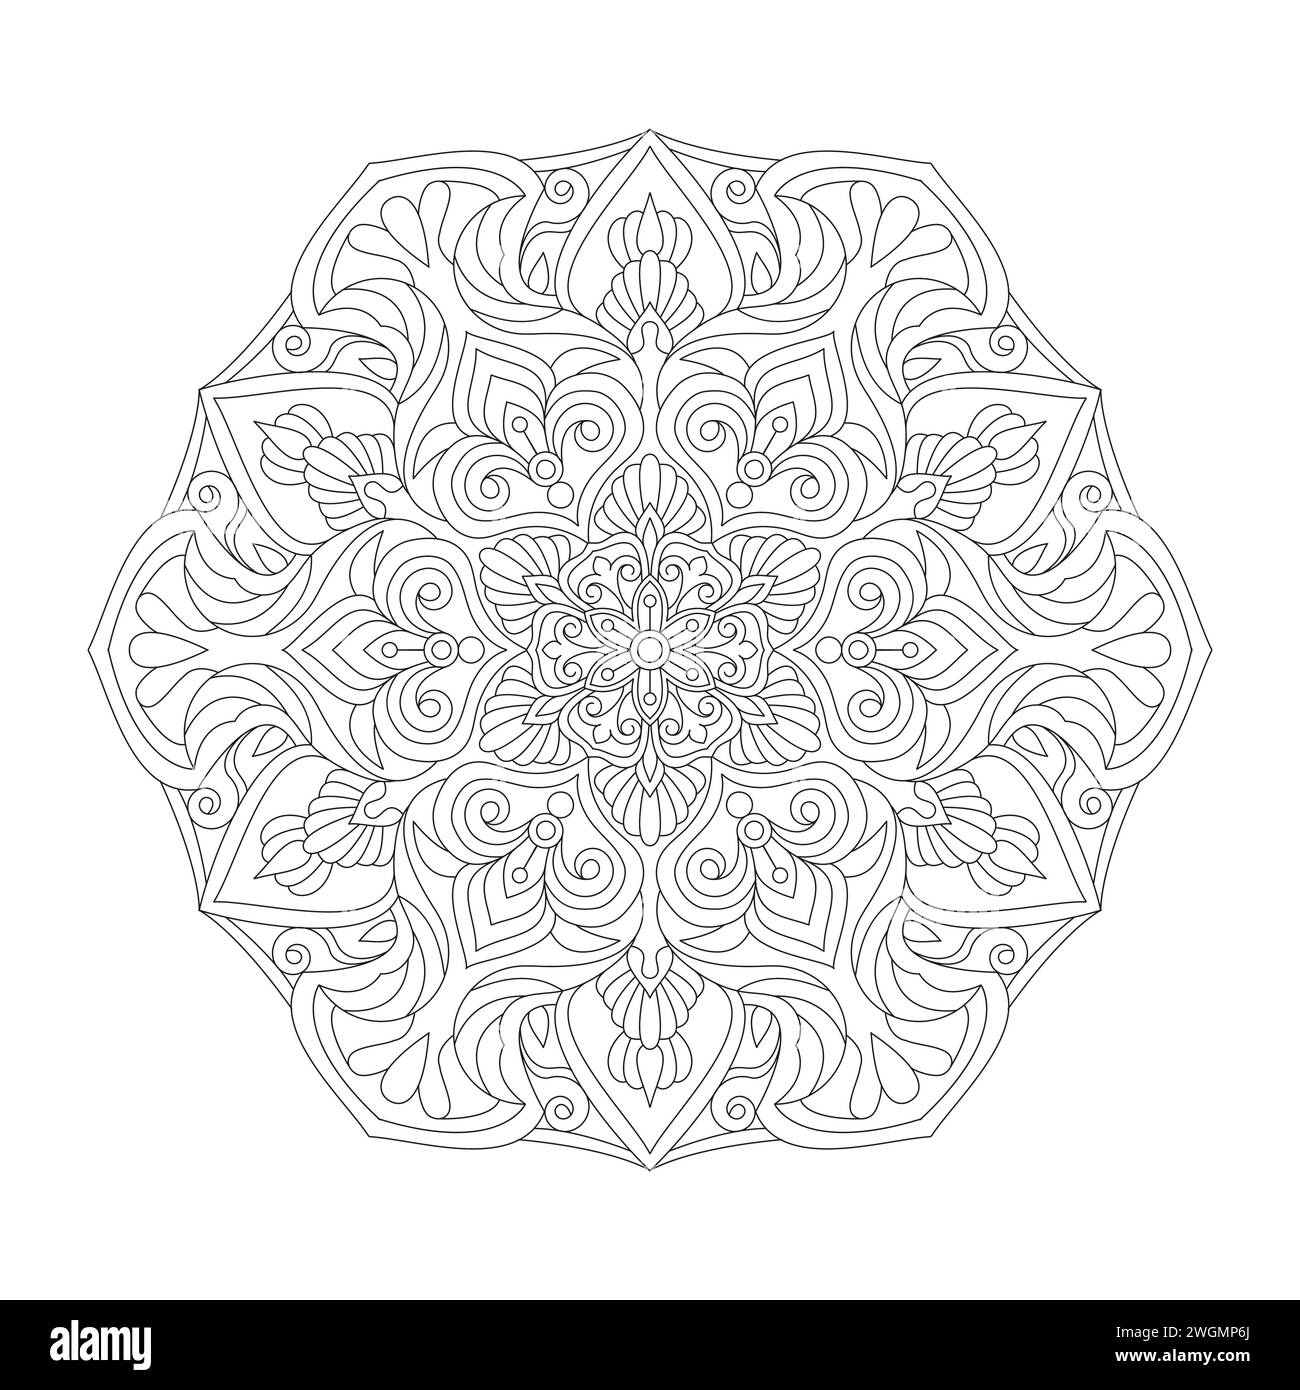 Attraktive Dekorative Mandala Malbuchseite für KDP Book Interior. Friedliche Blütenblätter, Fähigkeit zum Entspannen, Gehirnerlebnisse, harmonische Oase, Stock Vektor